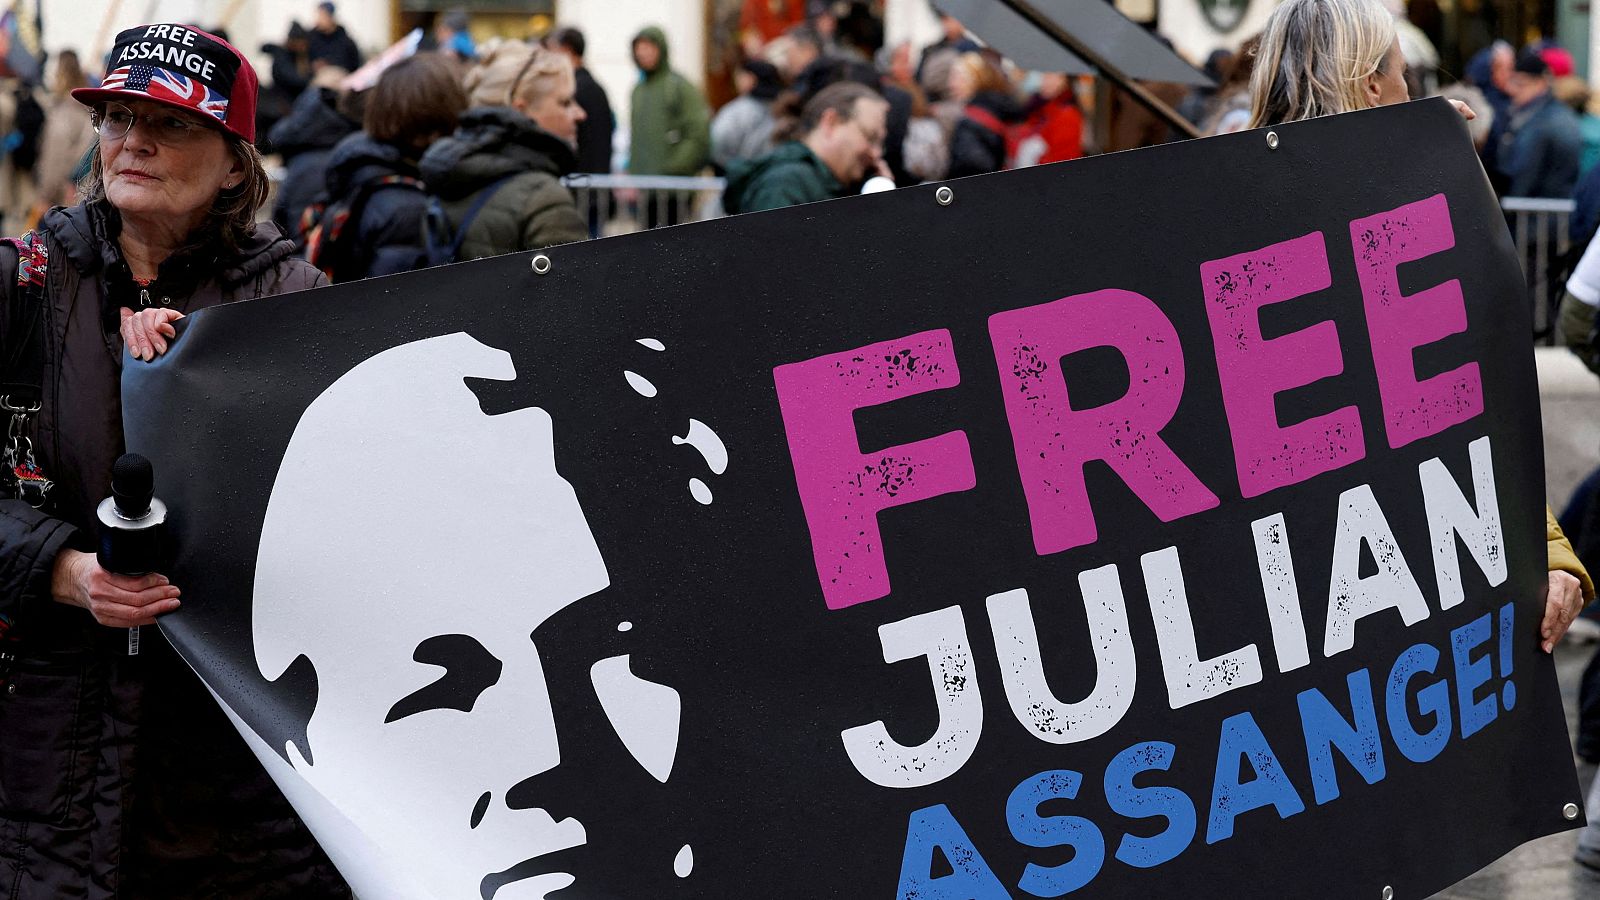 La escritora Stefania Maurizi expone el "poder secreto" detrás de la persecución contra Julian Assange